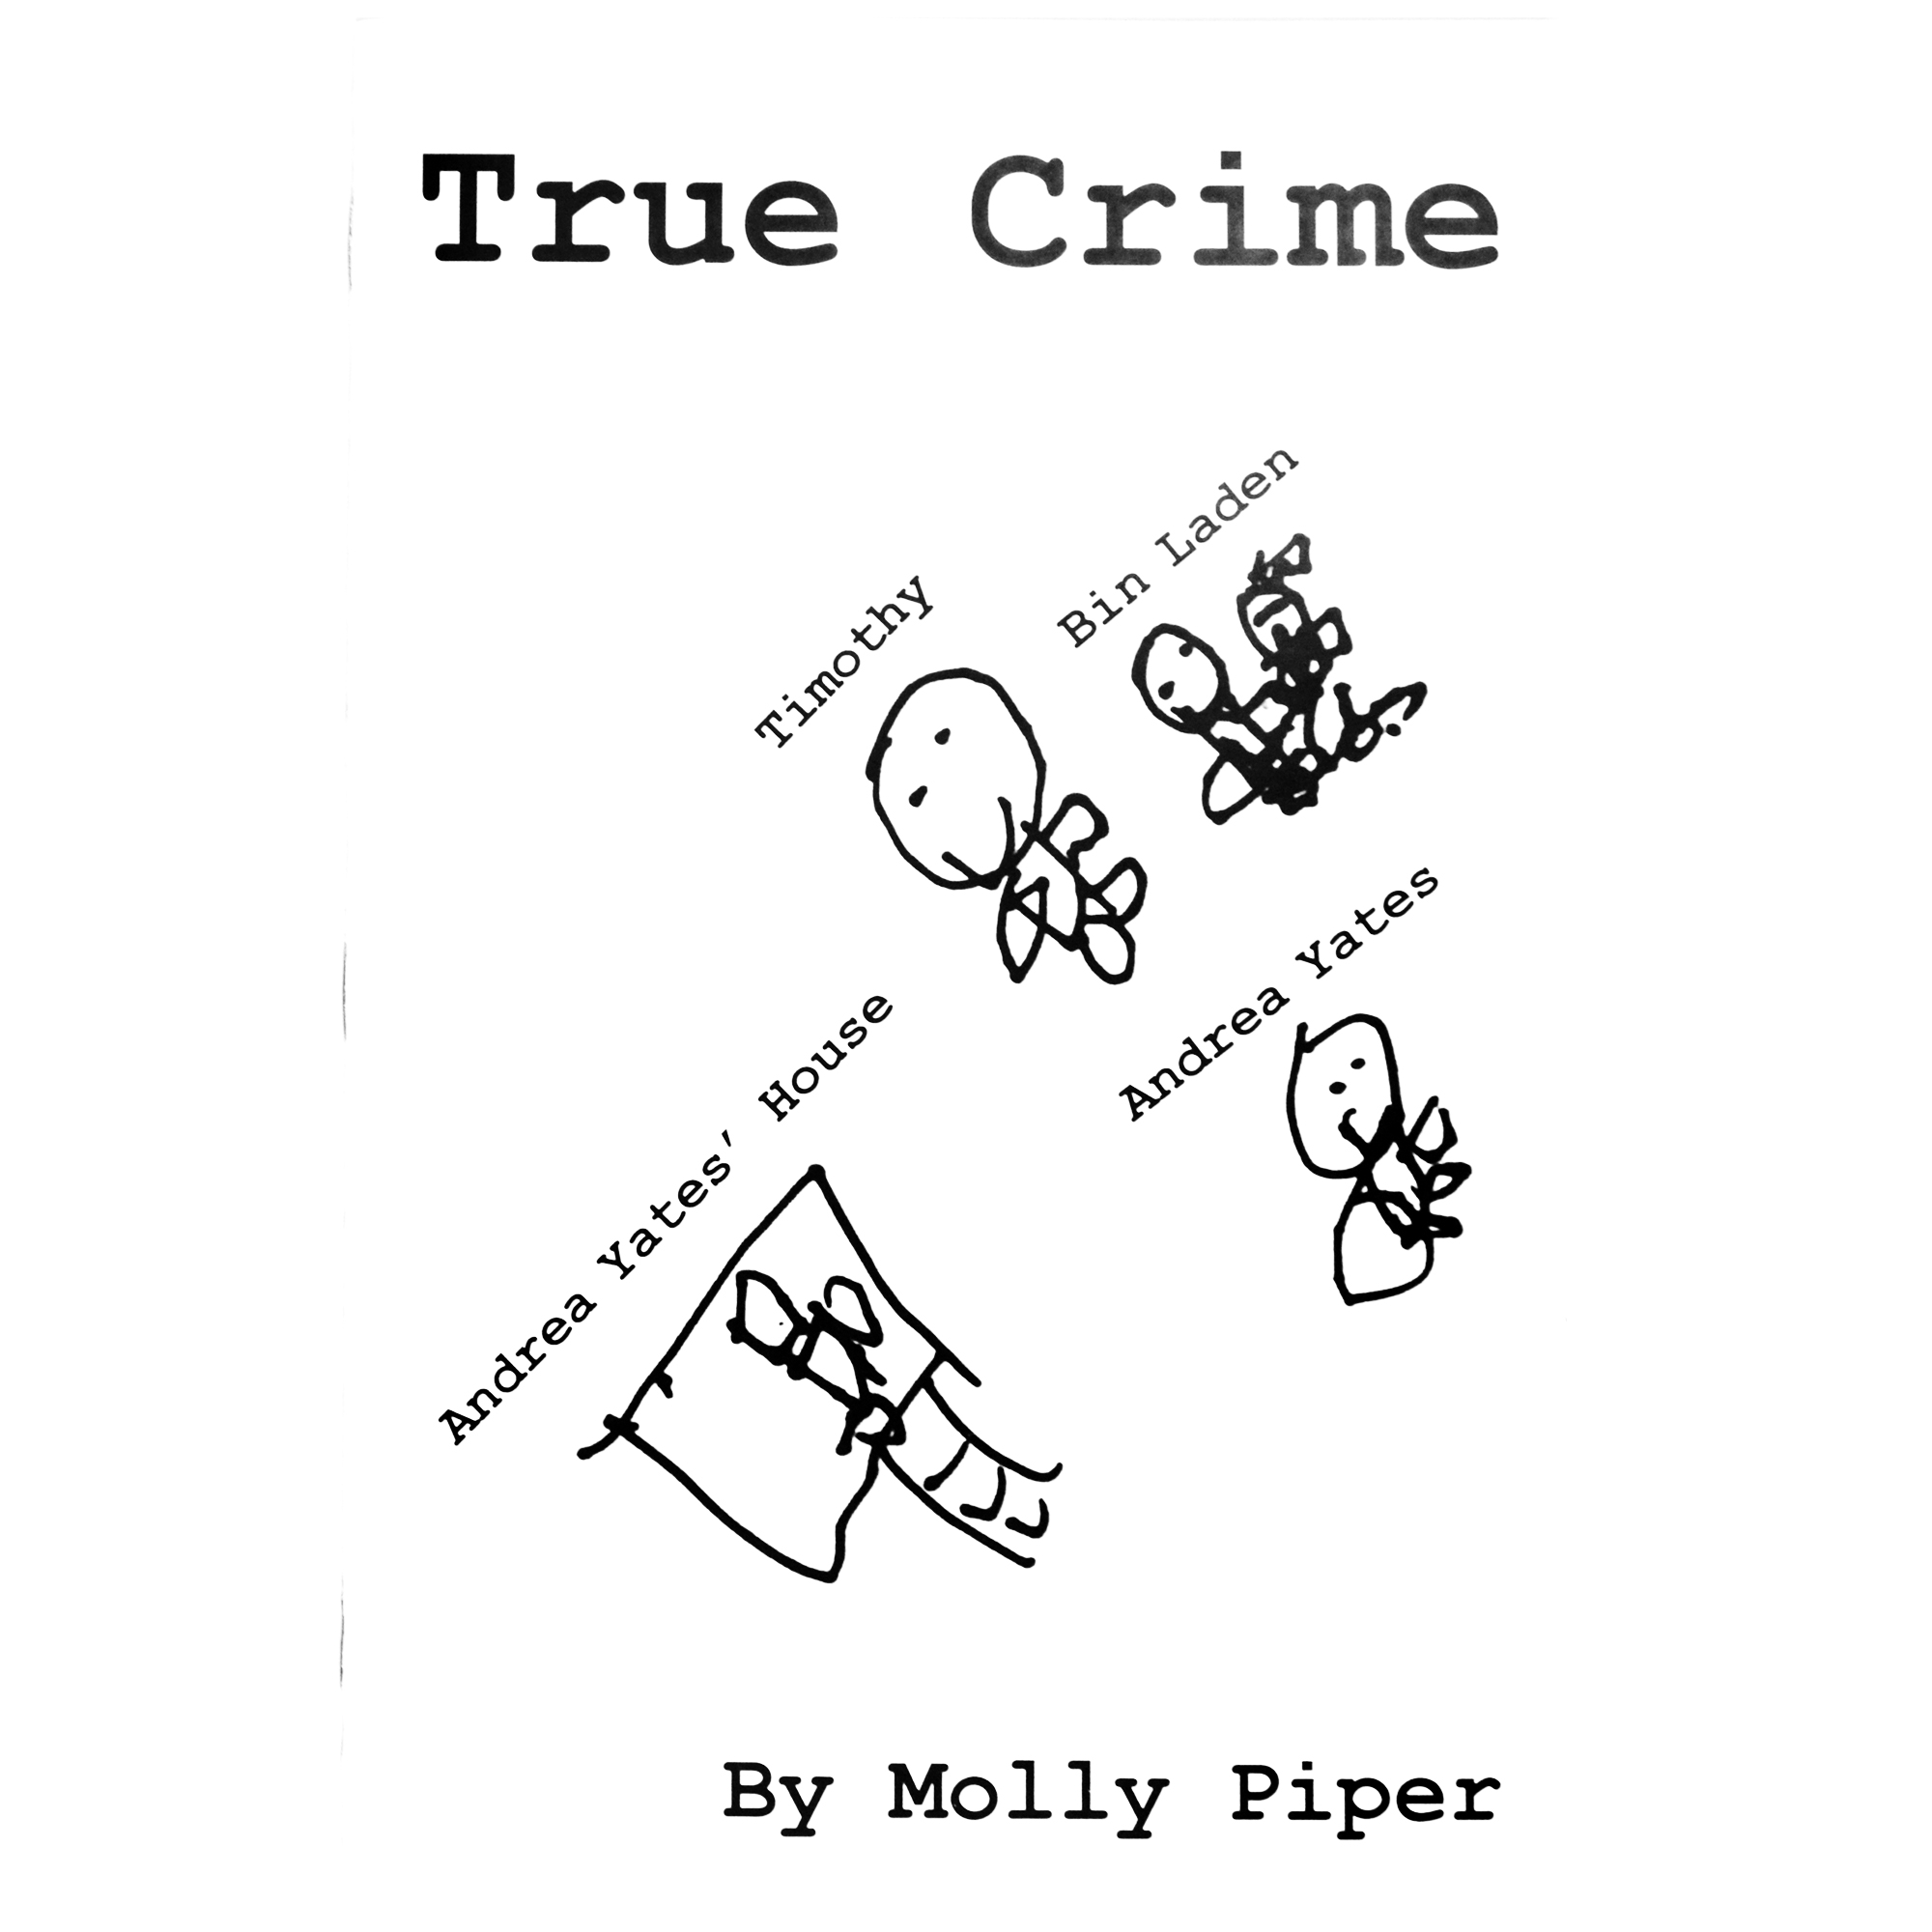 True Crime by Molly Piper